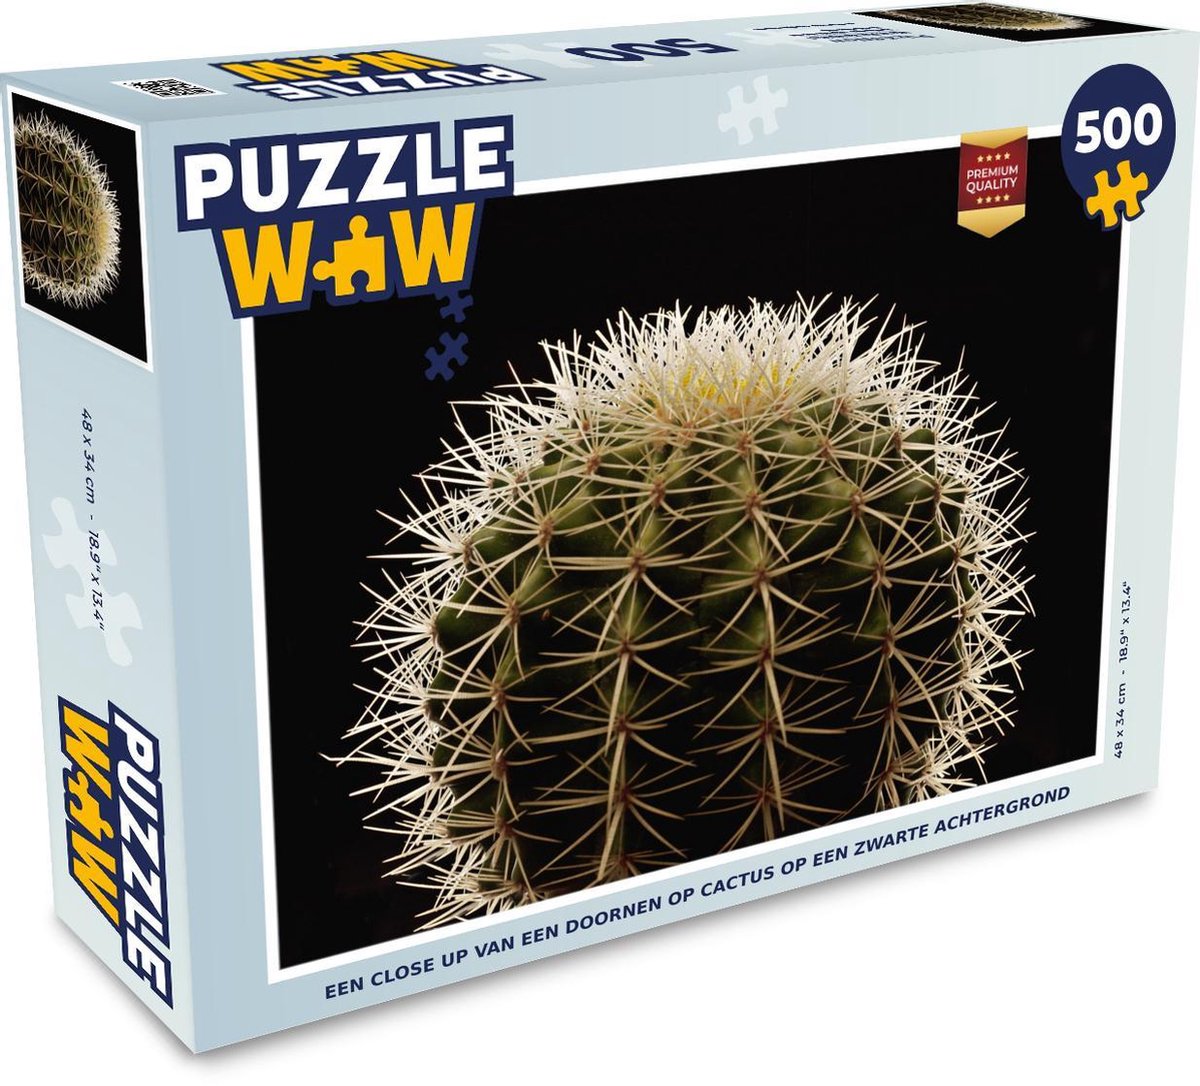 Afbeelding van product Puzzel 500 stukjes Planten op een zwarte achtergrond - Een close up van een doornen op cactus op een zwarte achtergrond - PuzzleWow heeft +100000 puzzels